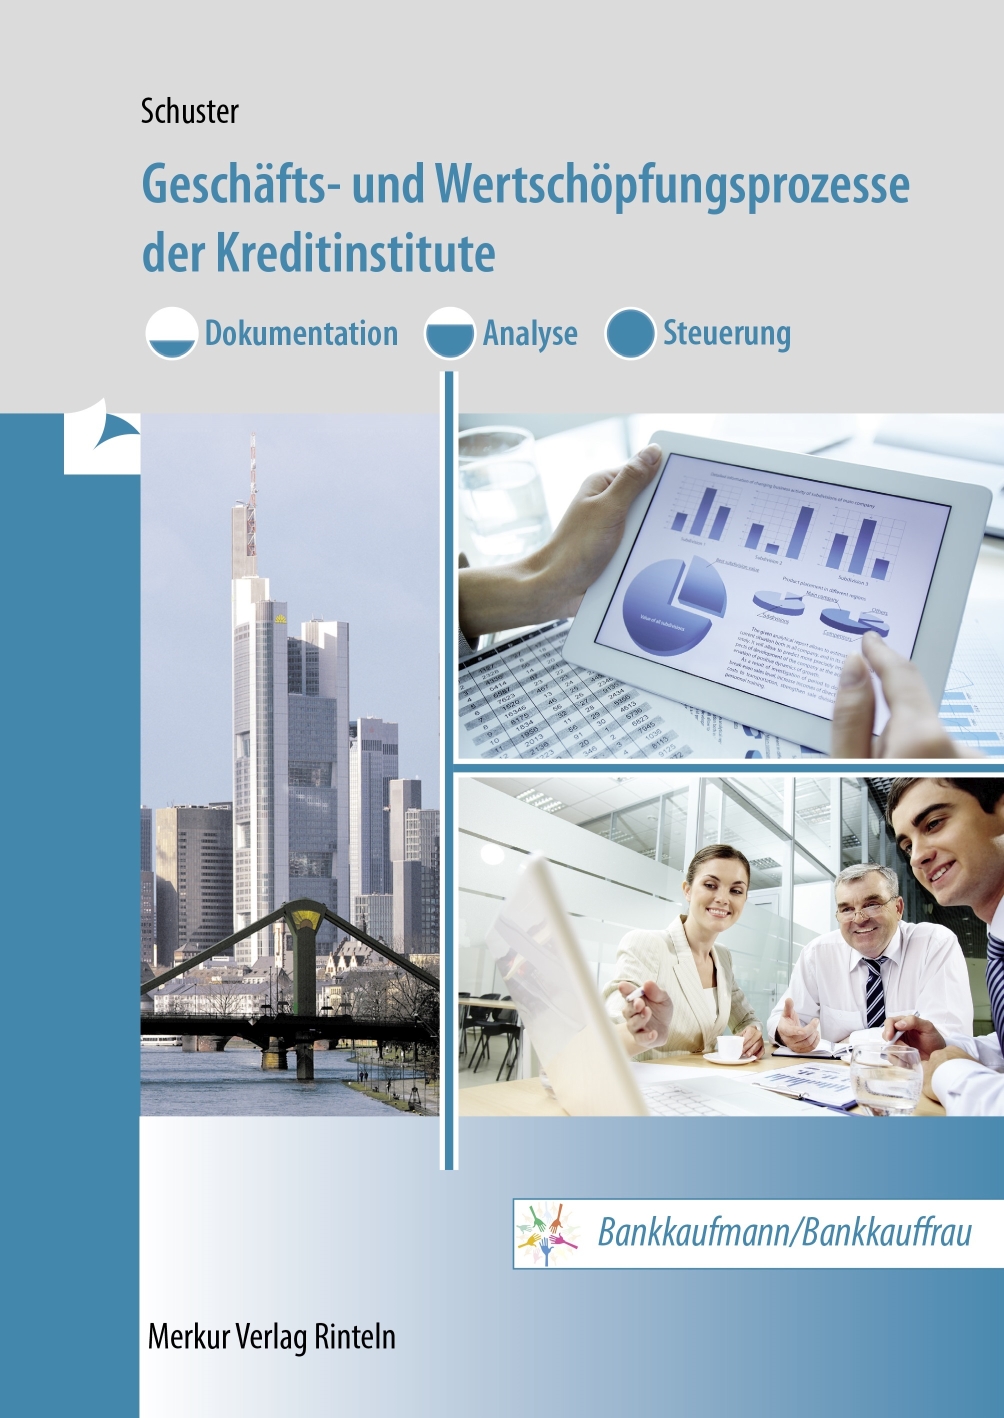 Geschäfts- und Wertschöpfungsprozesse der Kreditinstitute Dokumentation - Analyse - Steuerung Bankkaufmann/Bankkauffrau